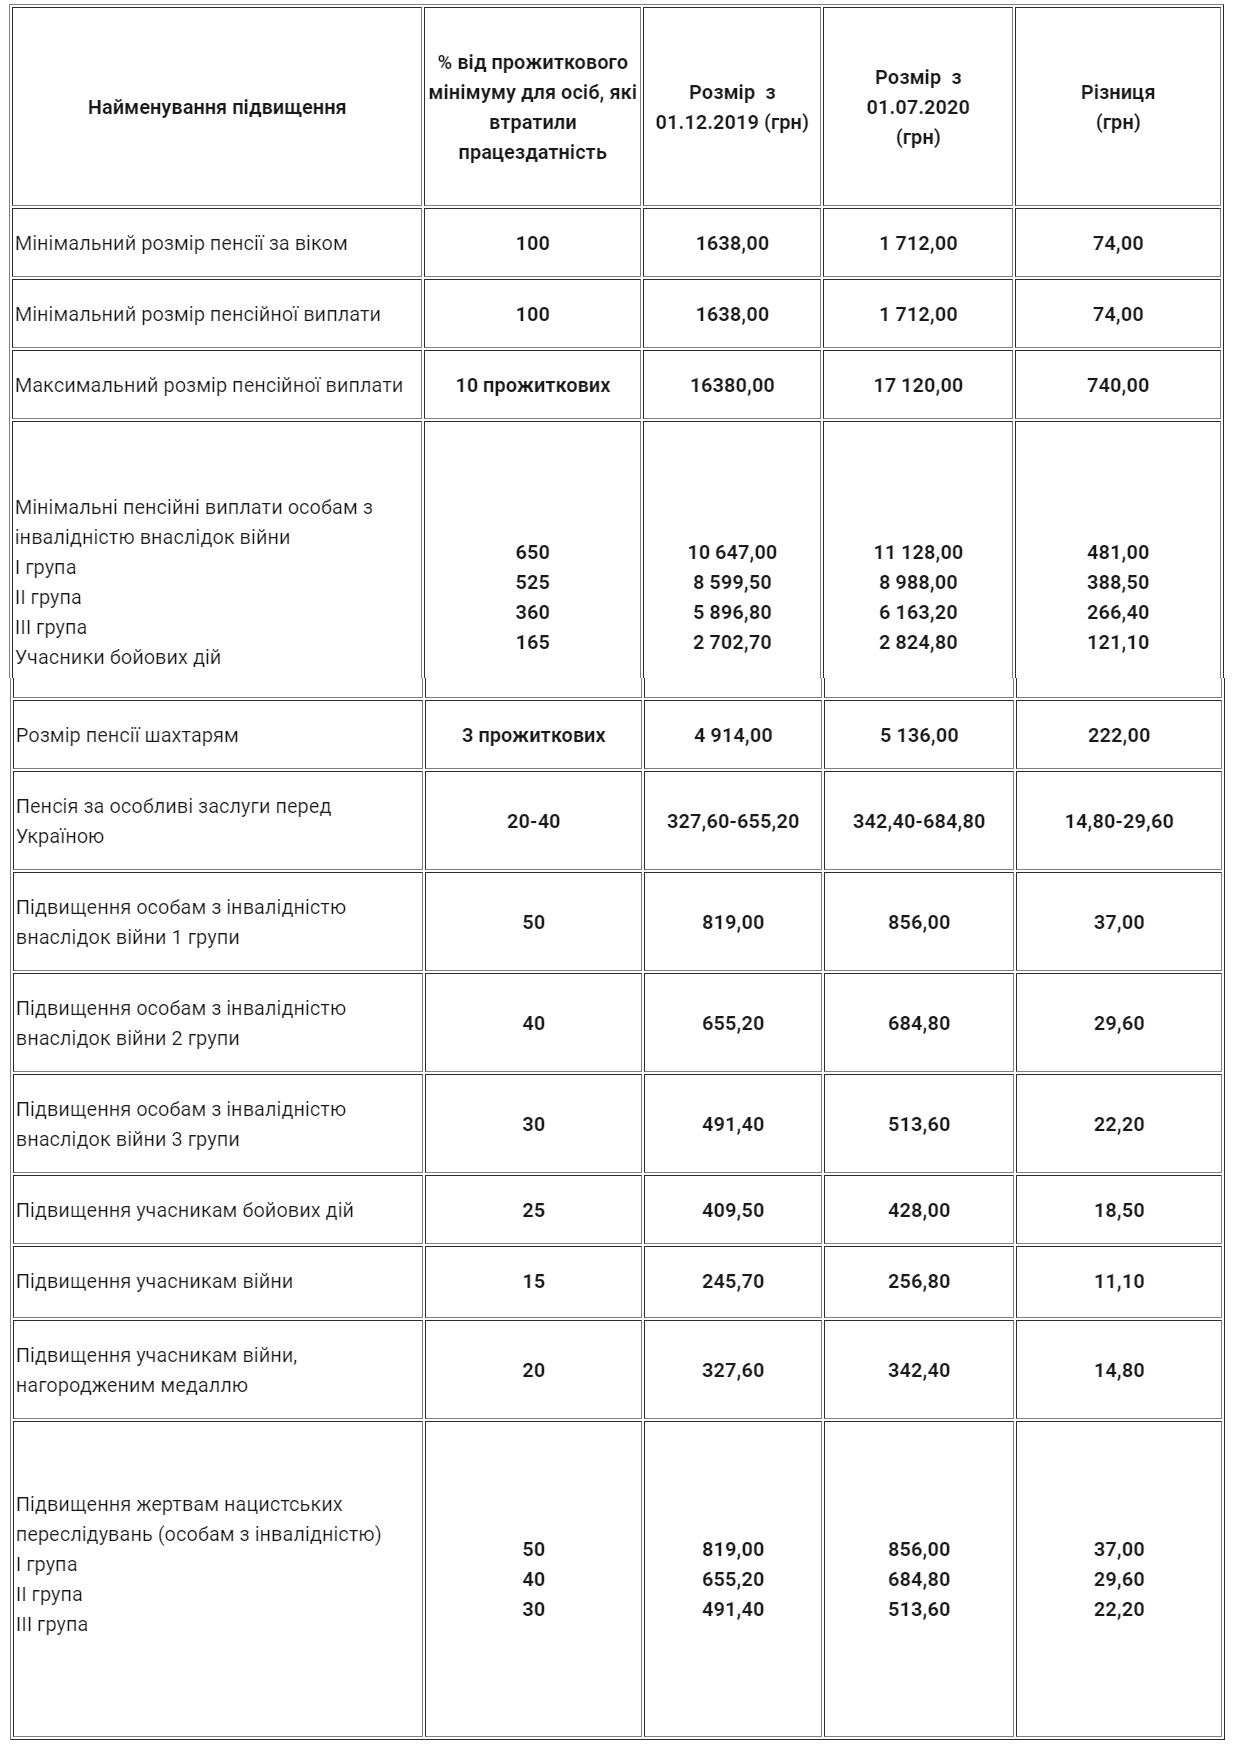 Пенсионерам в Украине снова повысили выплаты: прибавку получит ряд категорий